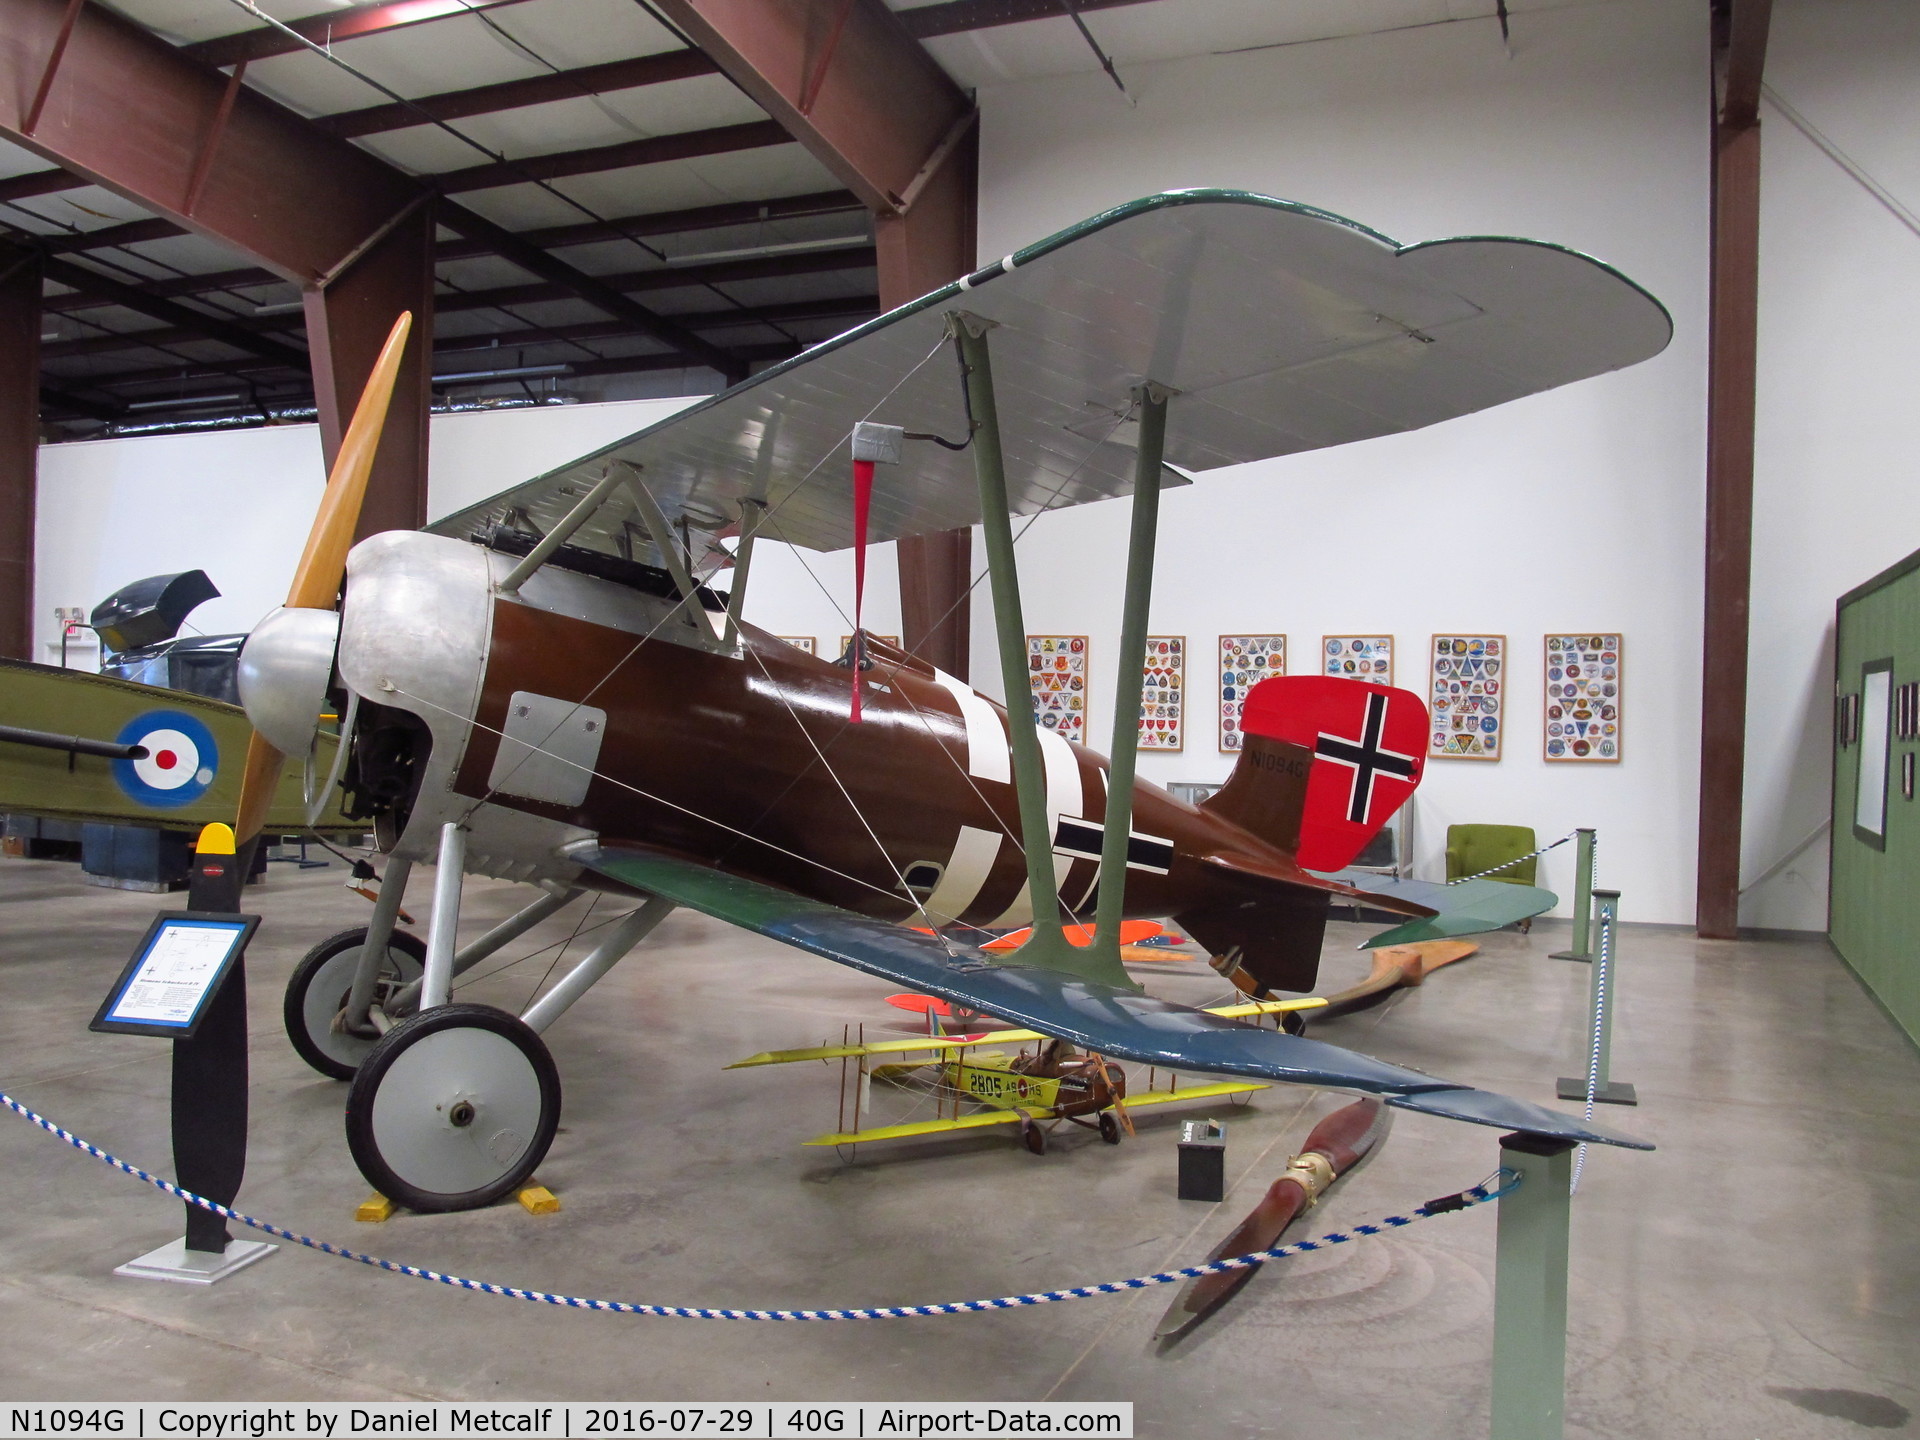 N1094G, Siemens-Schuckert (SSW) D-IV C/N S10, Planes of Fame Air Museum (Valle-Williams, AZ Location)